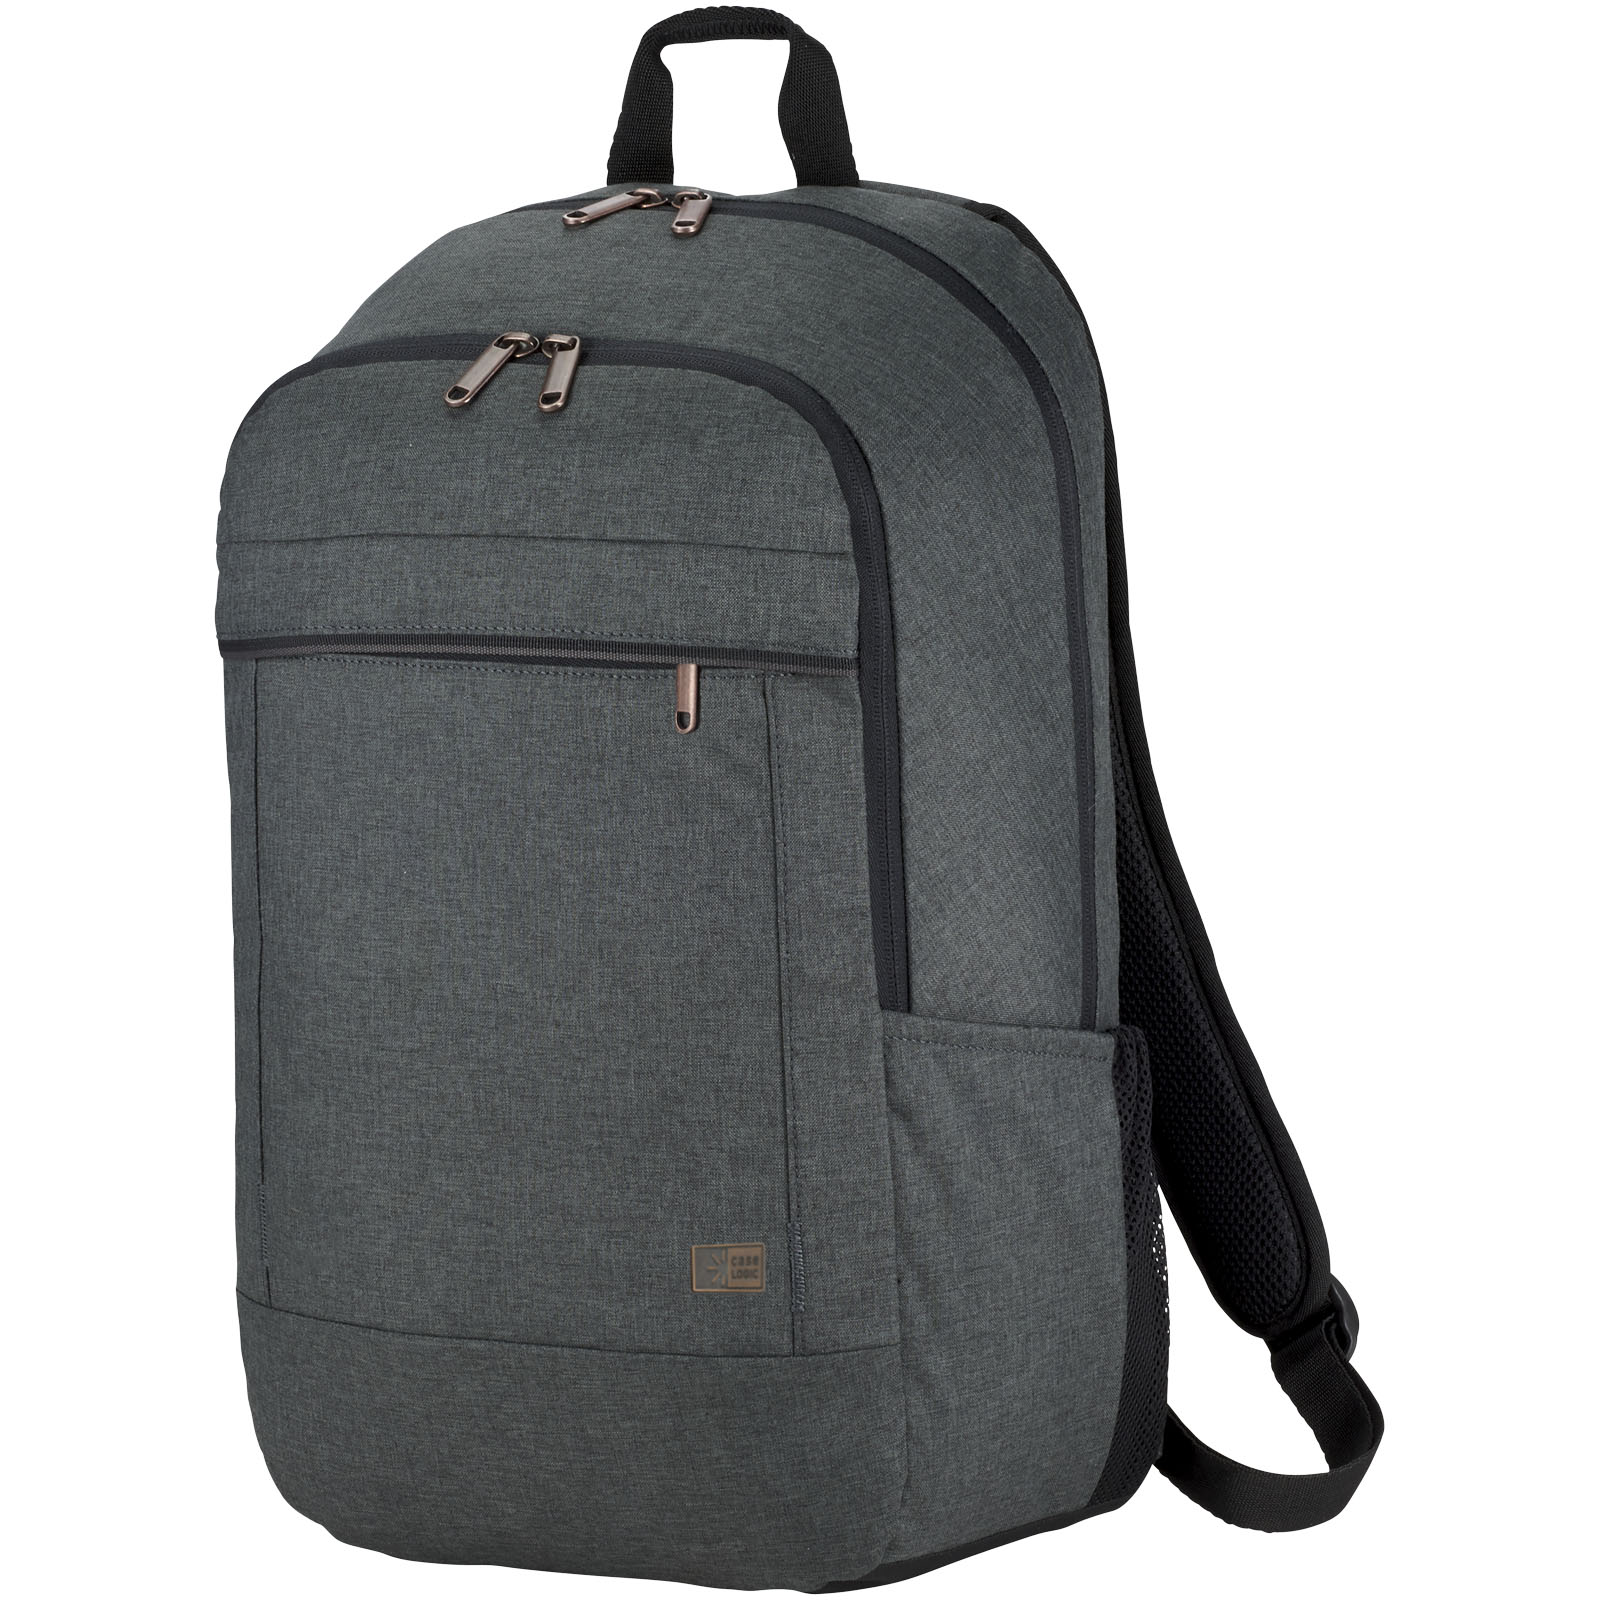 Městský batoh KERRI s prostorem na 15palcový počítač - heather grey